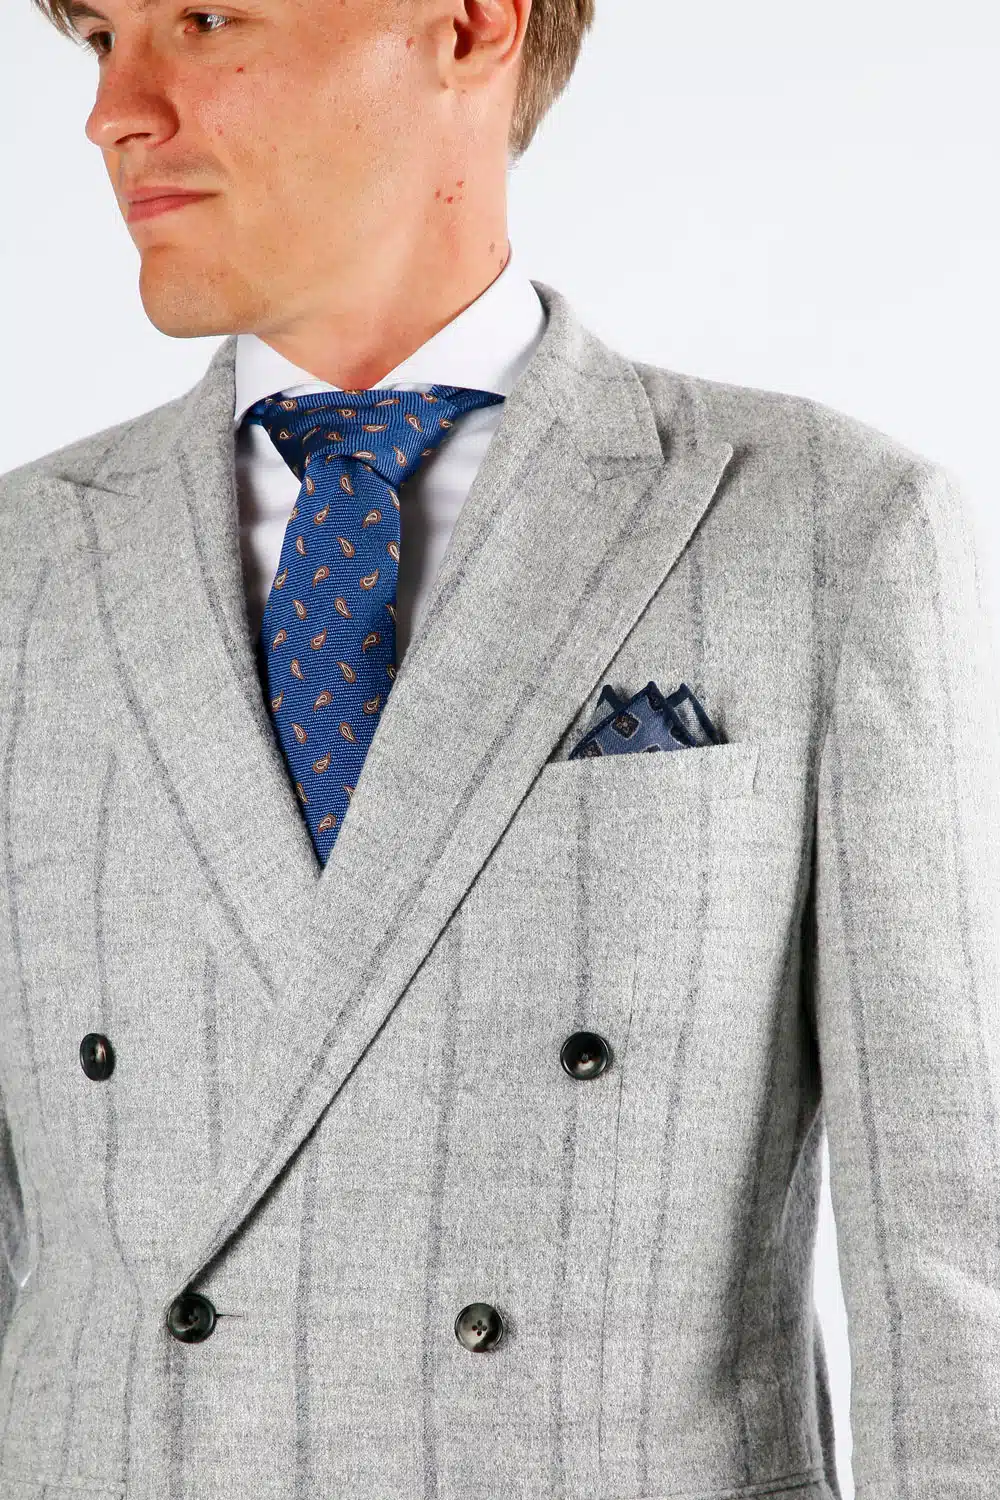 Een grijs gestreept op maat gemaakt doubel breasted pak met blauwe das en passend pochet.